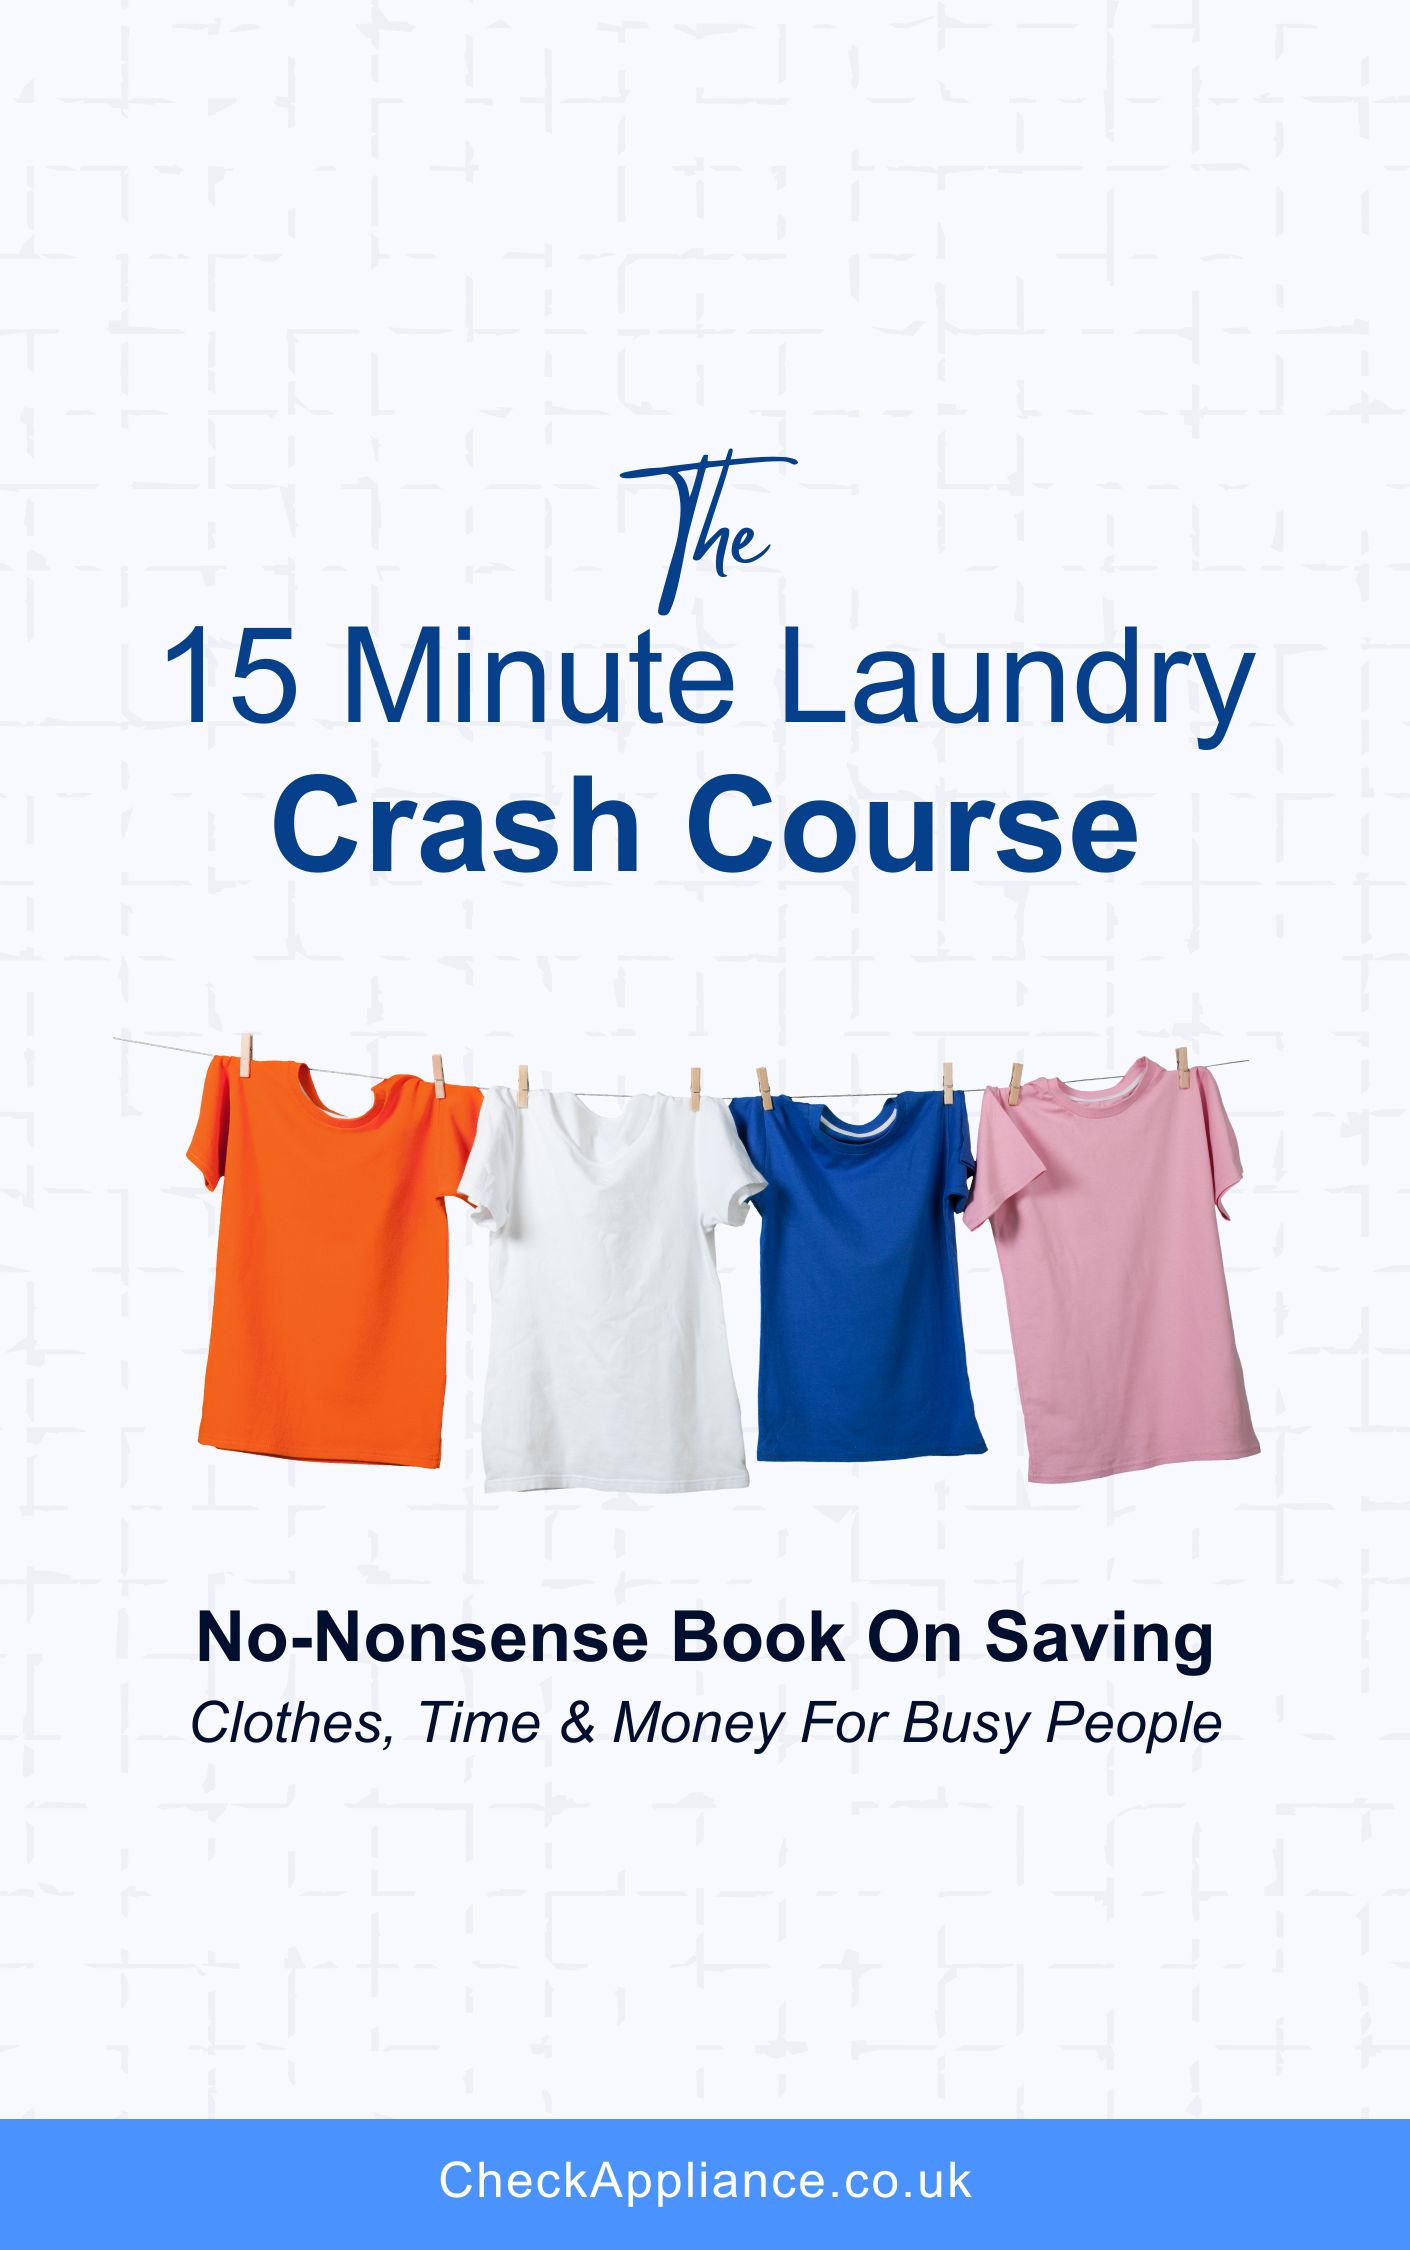 15 Minute Laundry Crash Course